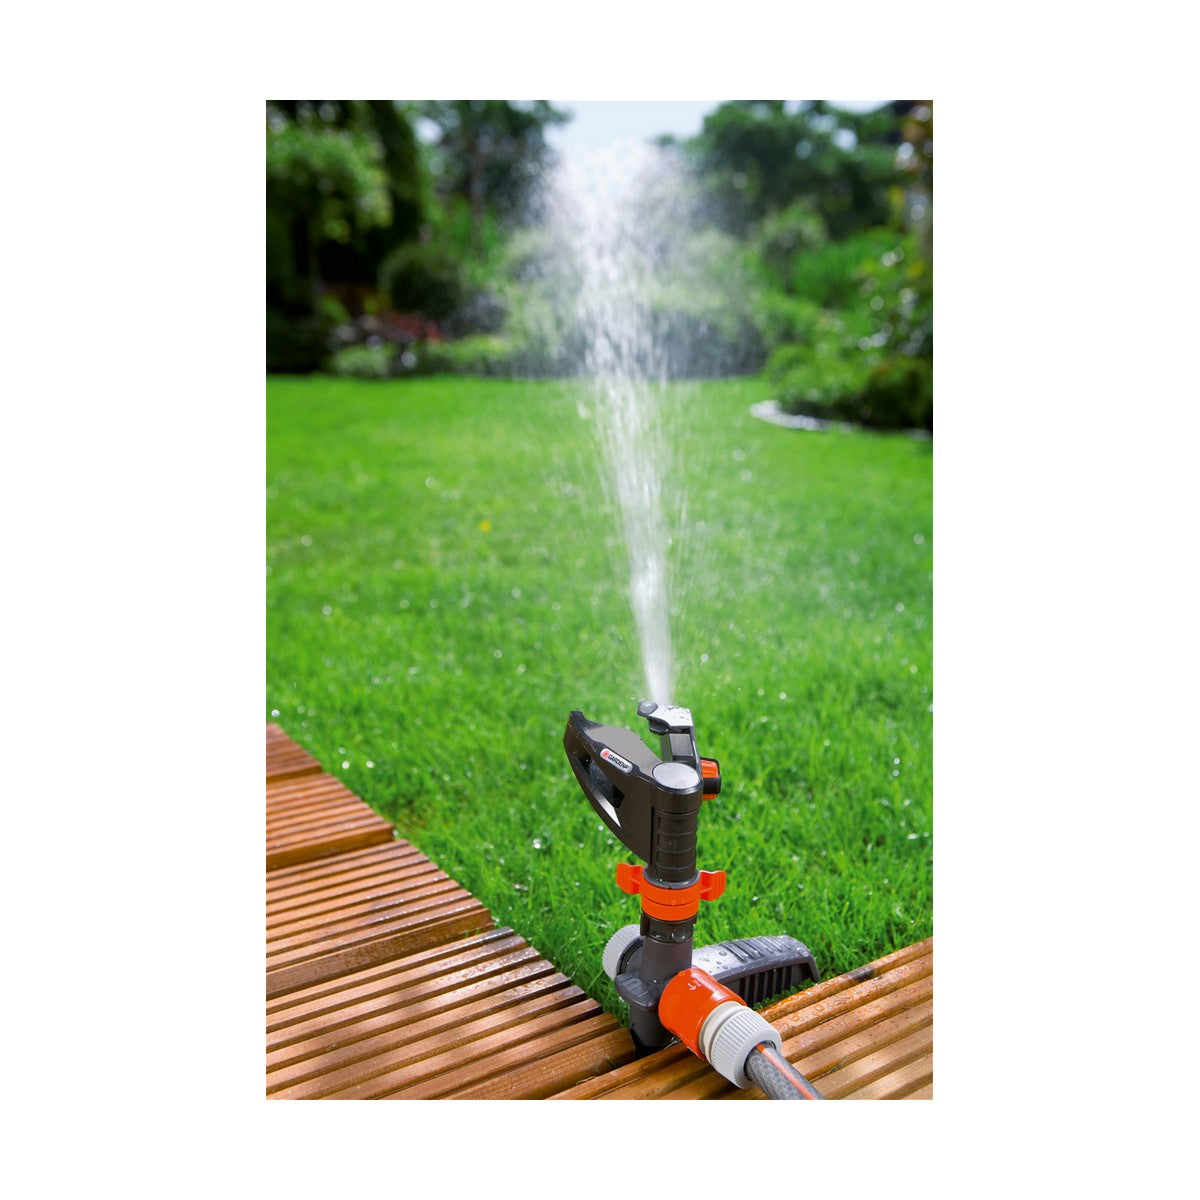 Zraszaczy wodna ogroda 8141-20 Polipropylen